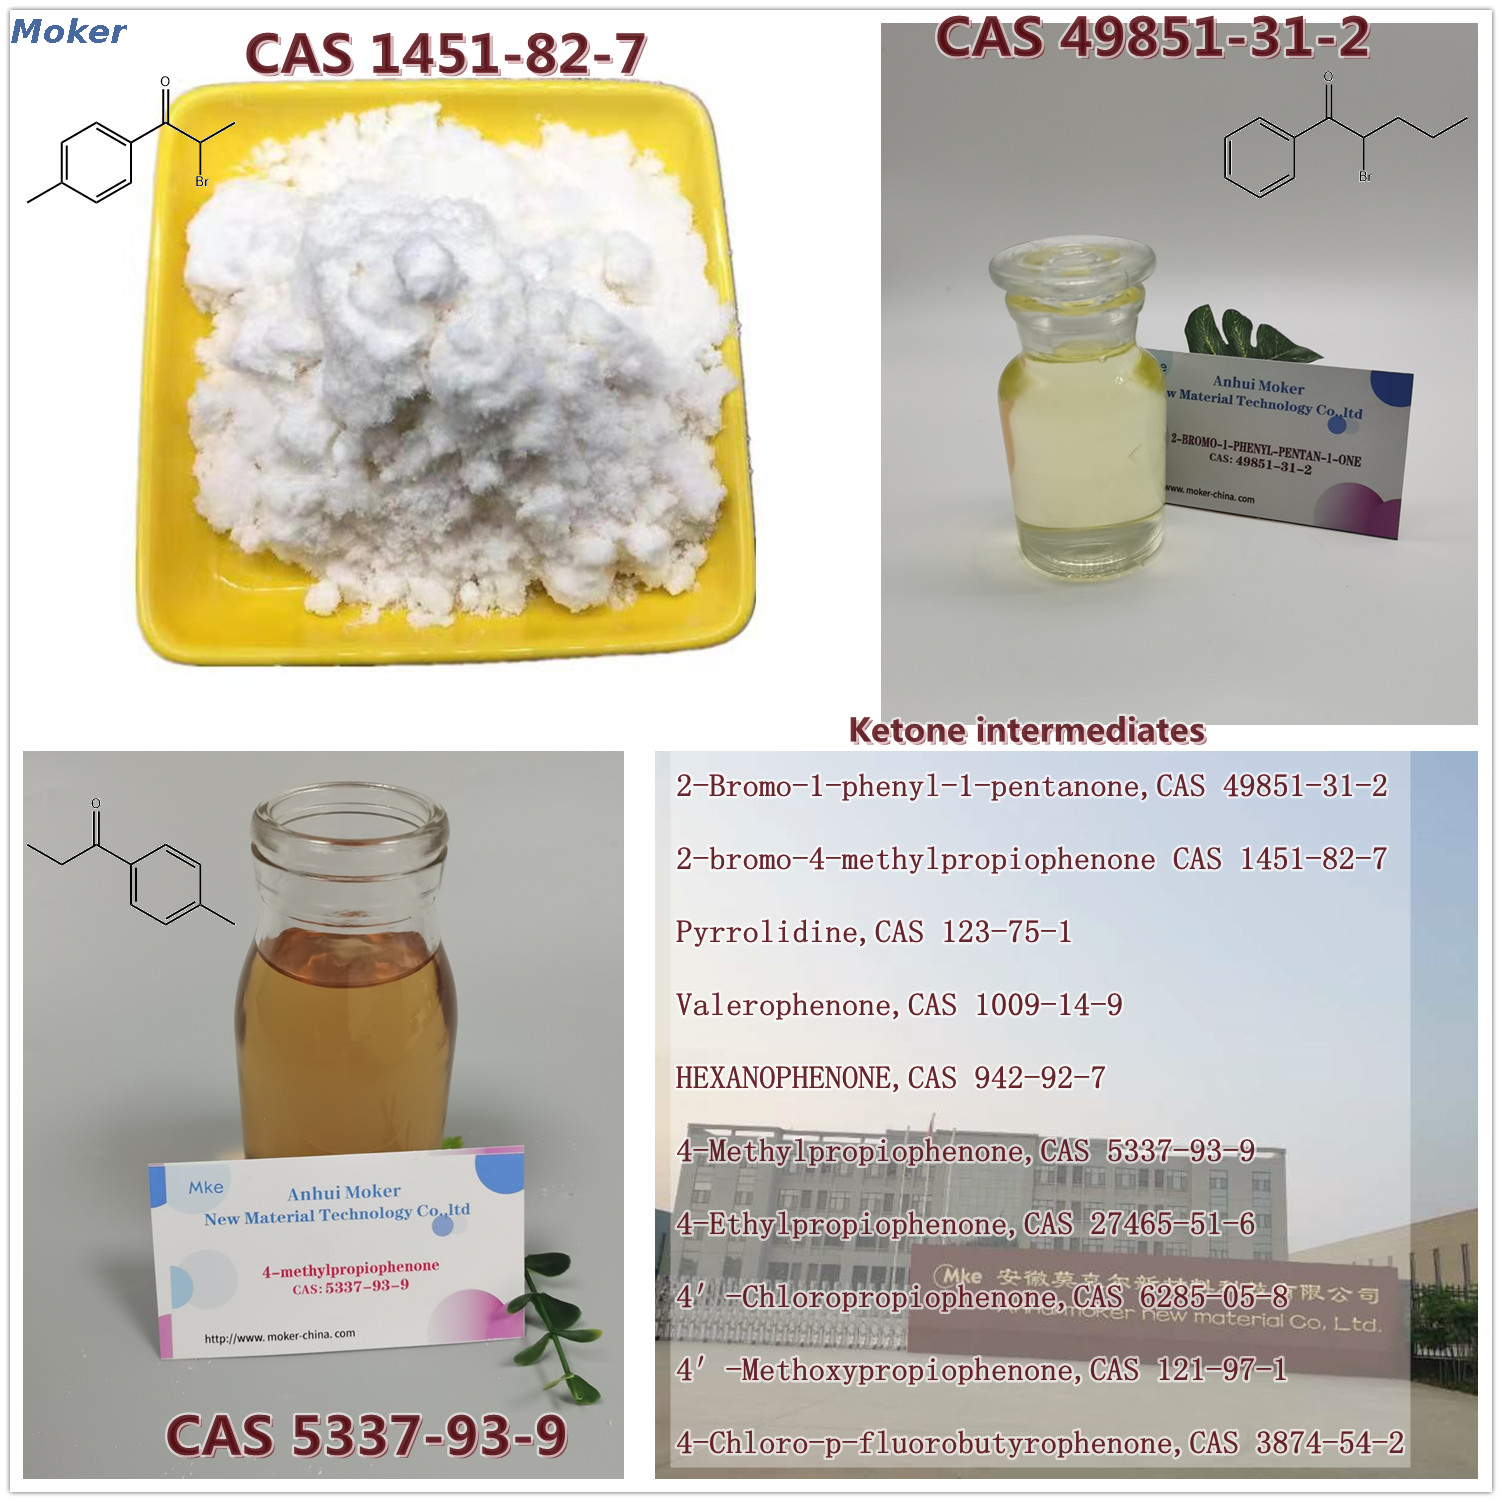 Bestes quality2-Bromo-4-Methylpropiophenone CAS 1451-82-7 2 Bromo 4 Methylpropiophenone Powder